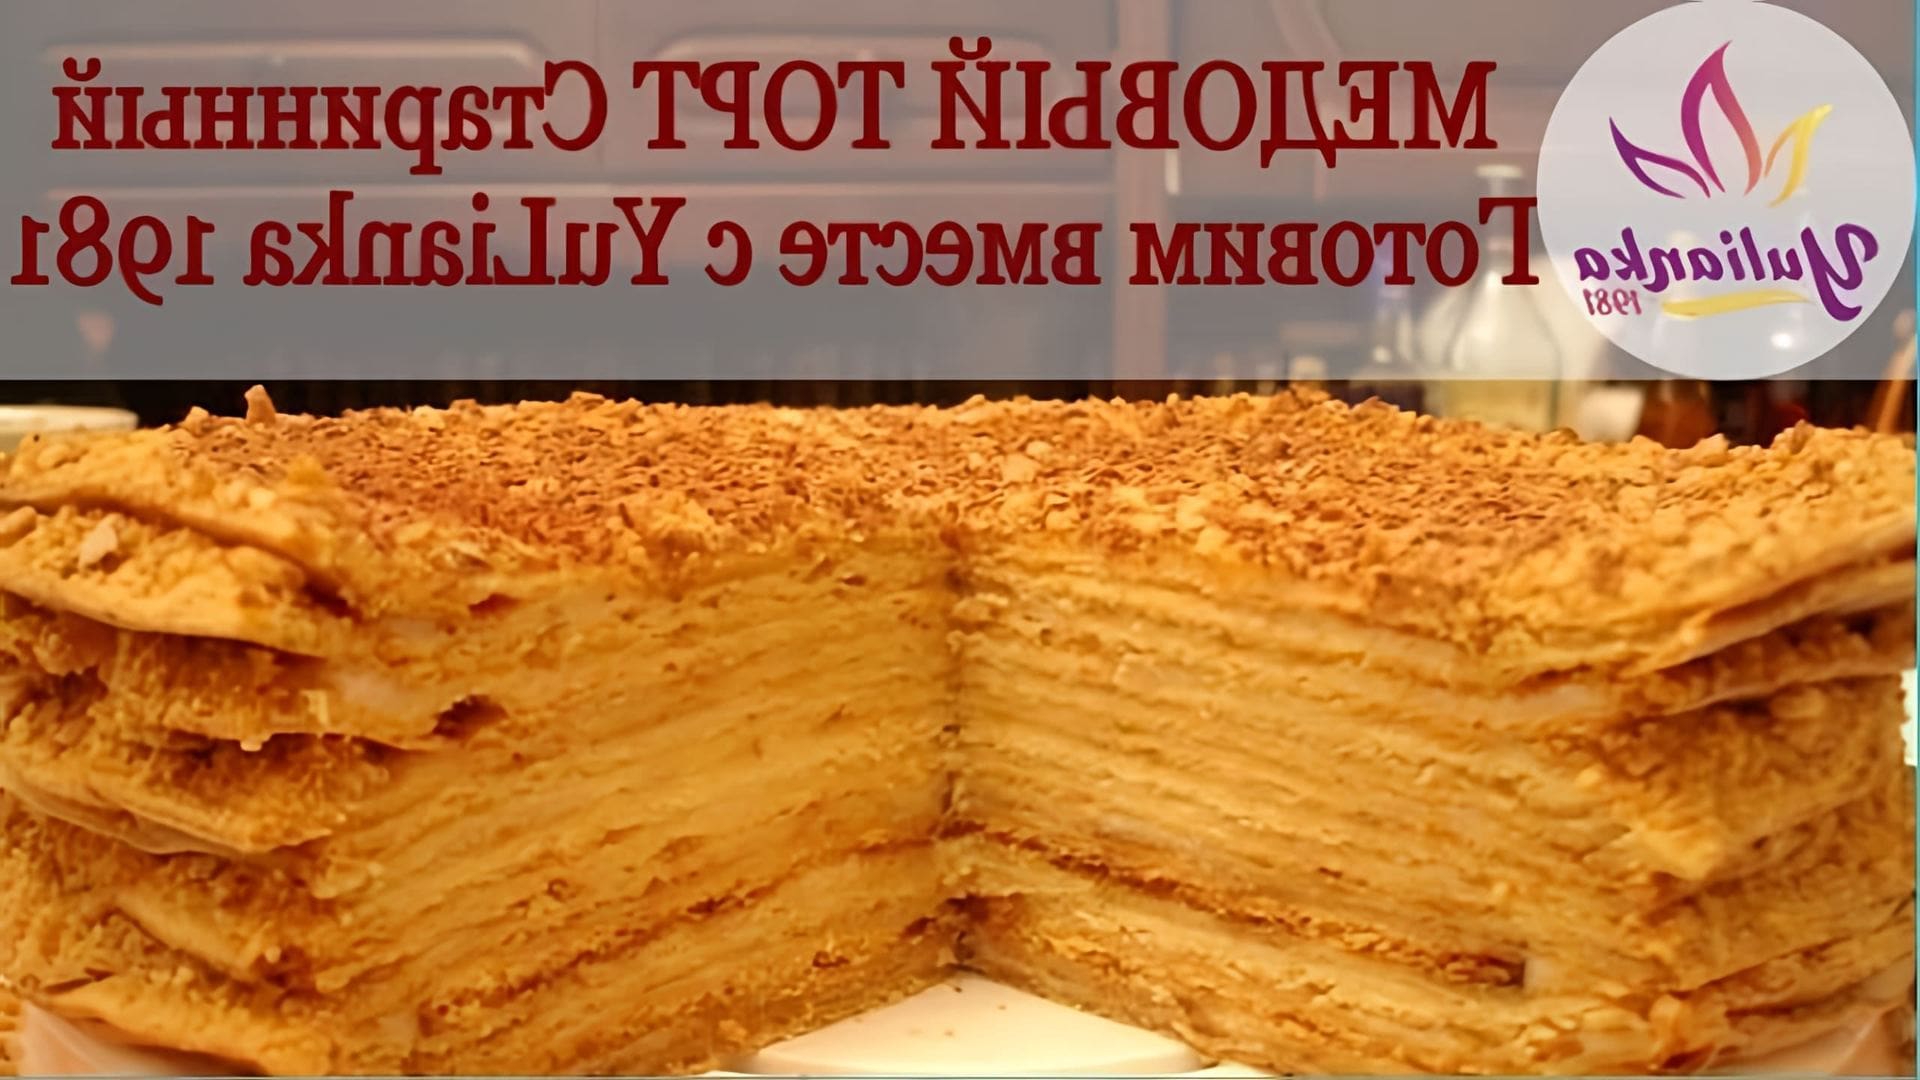 В этом видео-ролике YuLianka1981 делится рецептом приготовления старинного медового торта